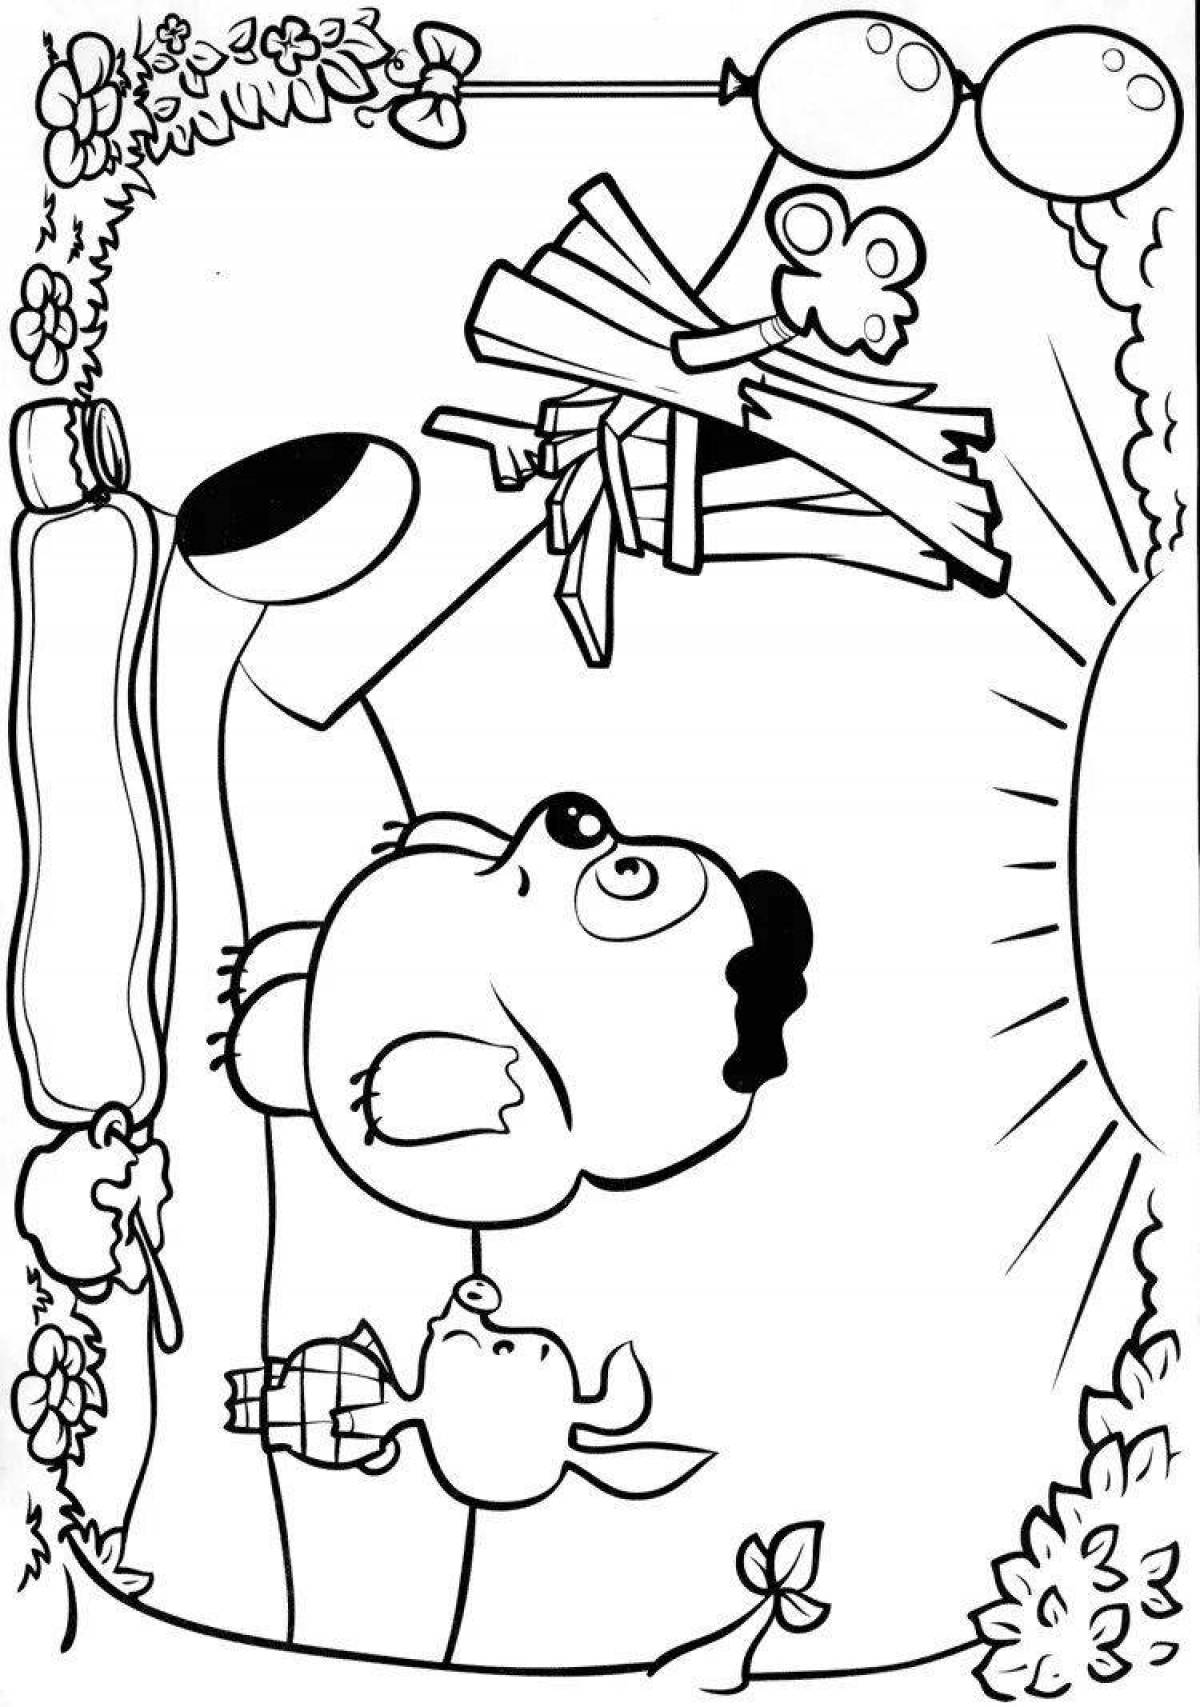 Выдающаяся раскраска союзмультфильм винни-пух